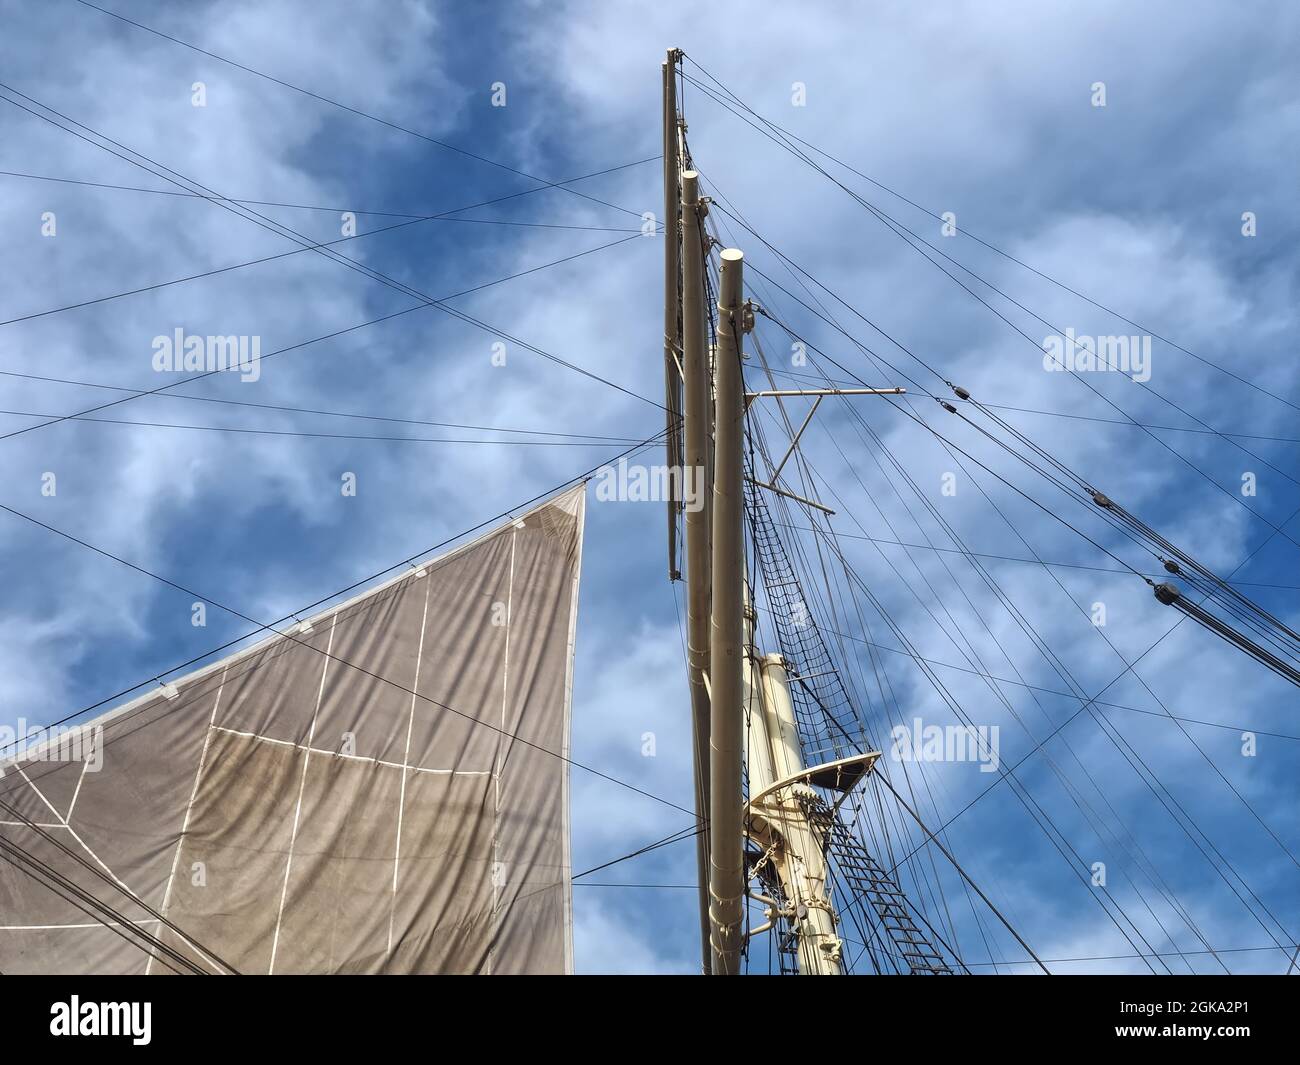 Sail and ropes of sailing ship Stock Photo